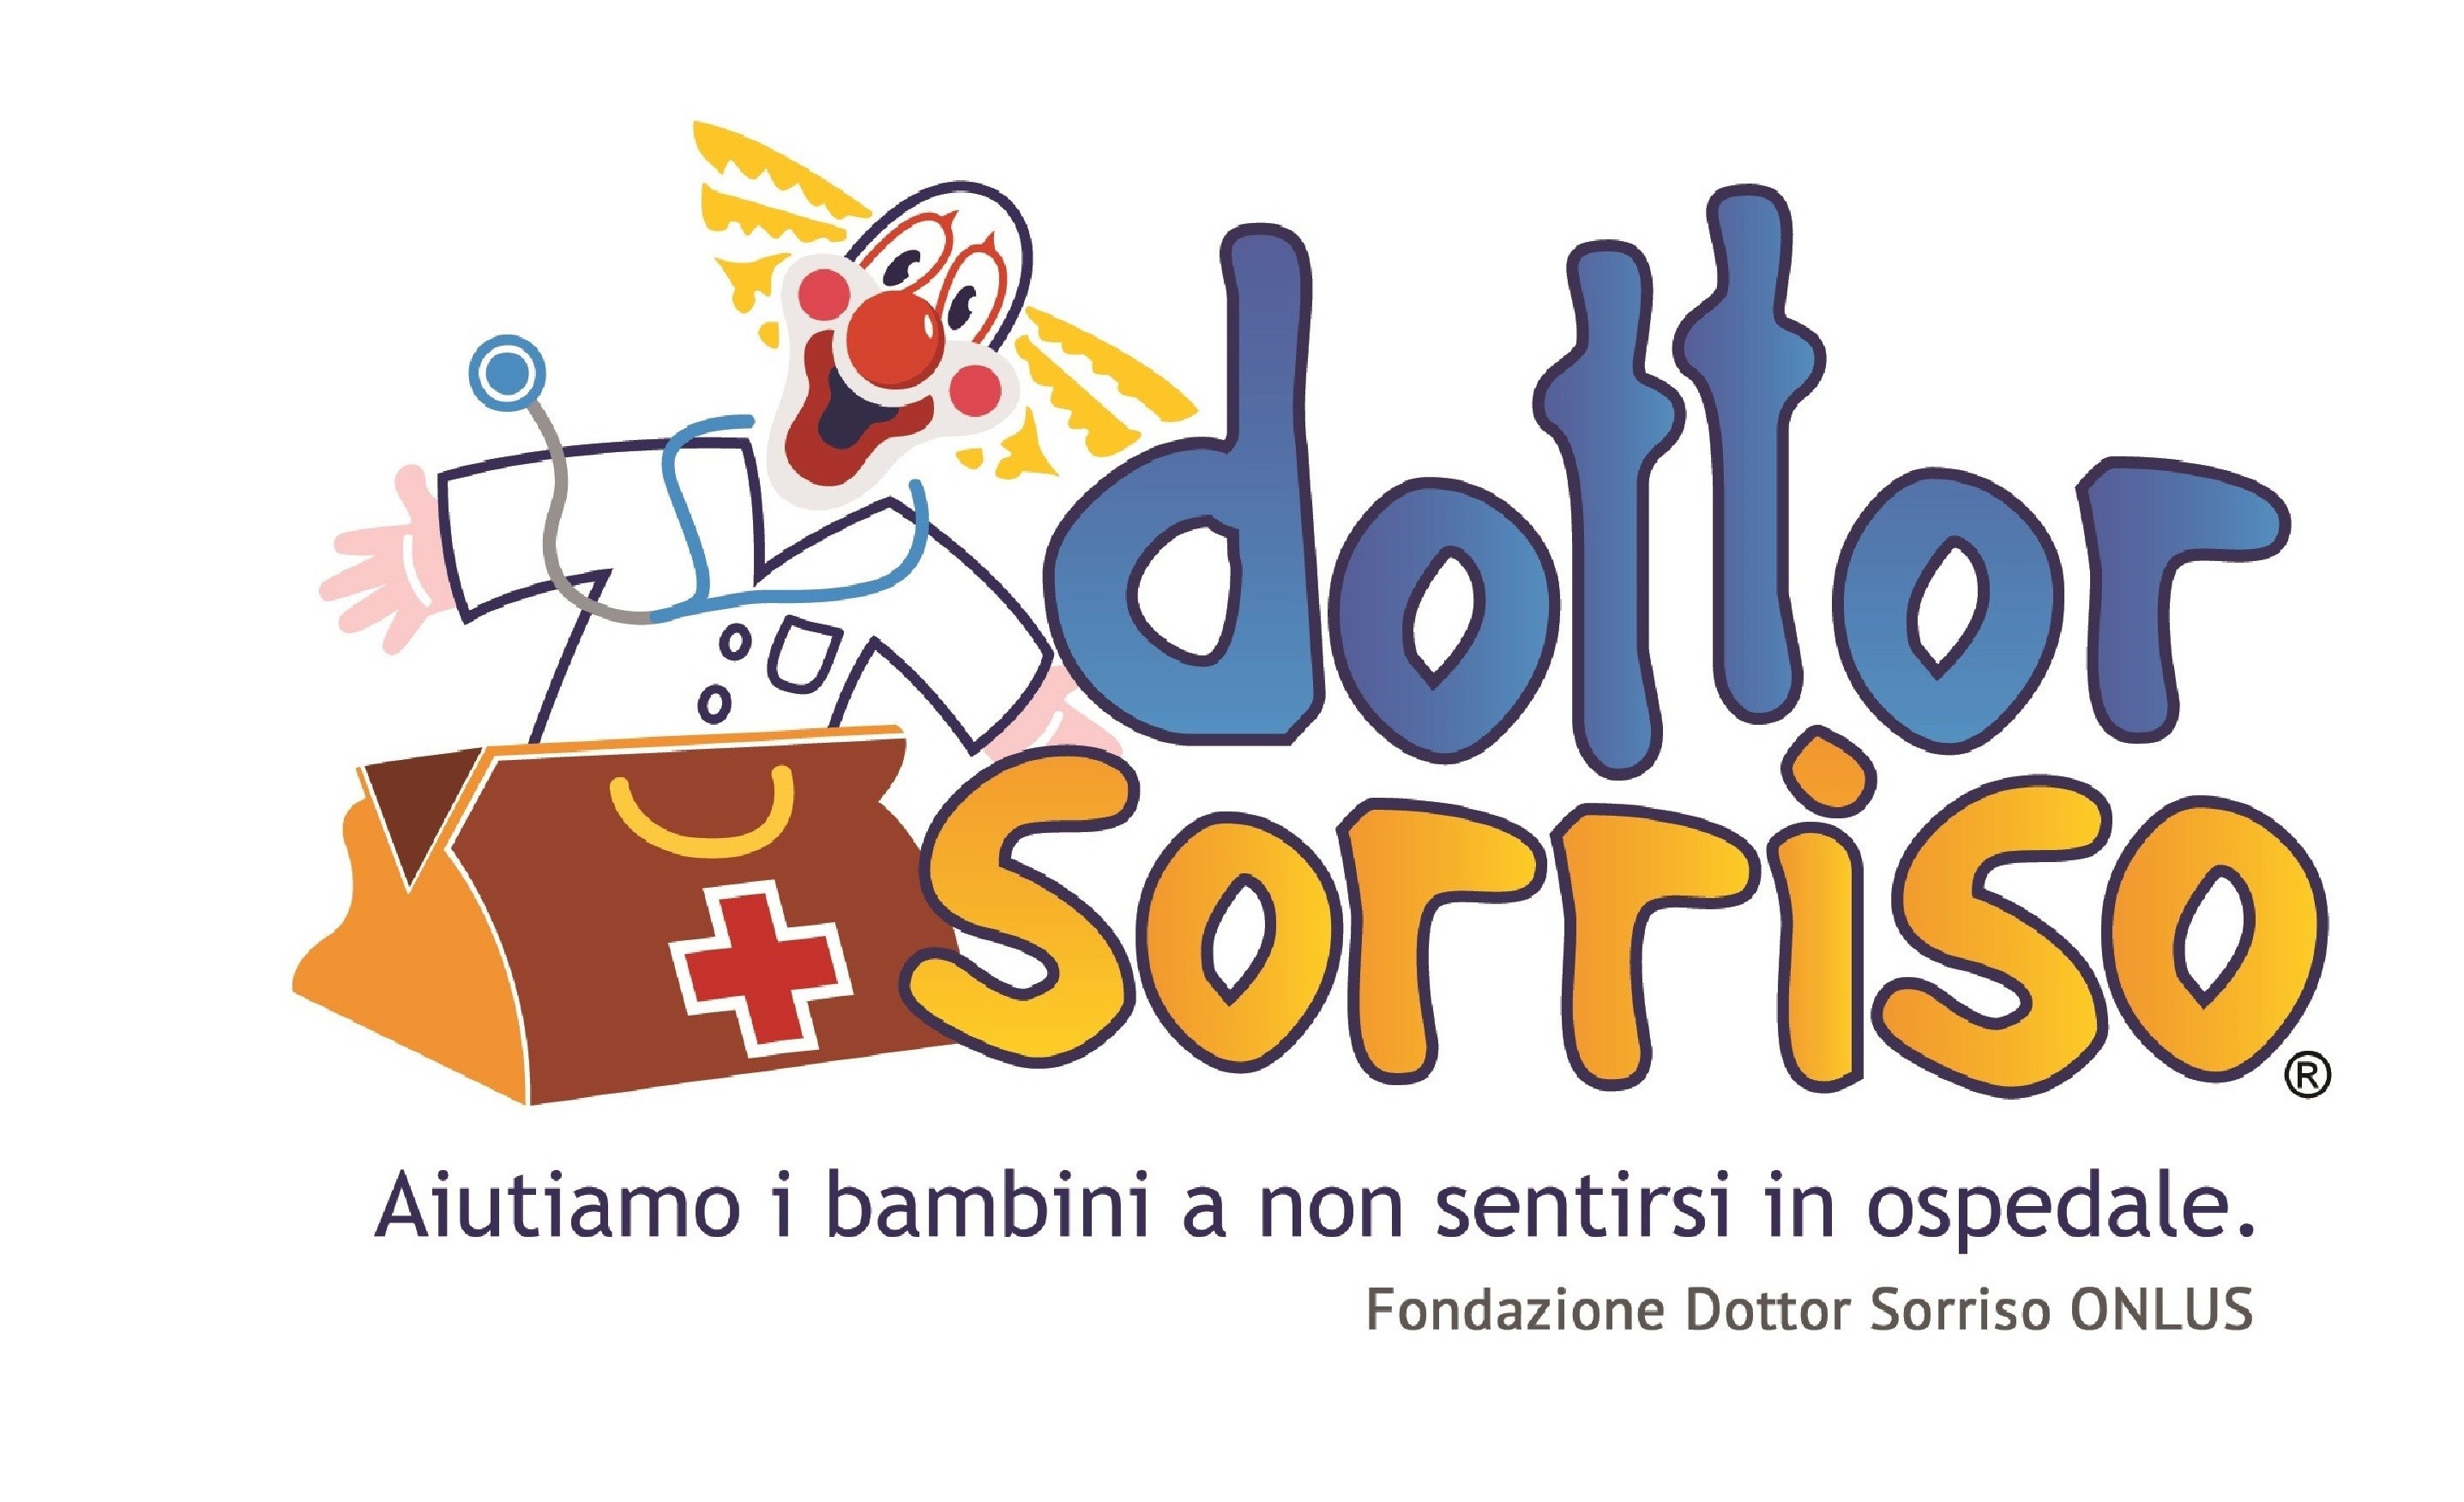 Fondazione Dottor Sorriso Onlus